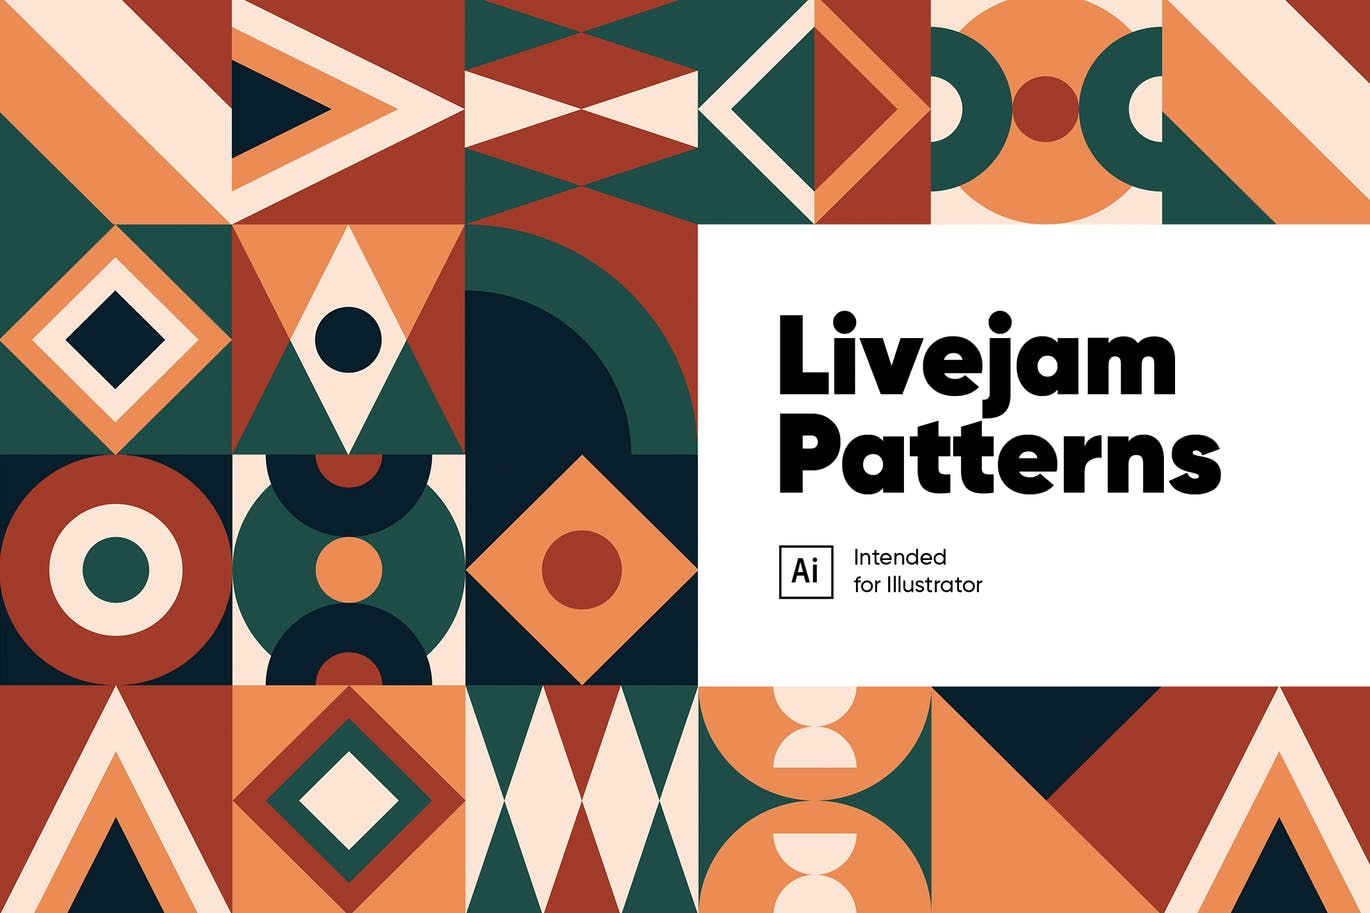 Livejam抽象图案背景素材库精选 Livejam Abstract Patterns Pack插图